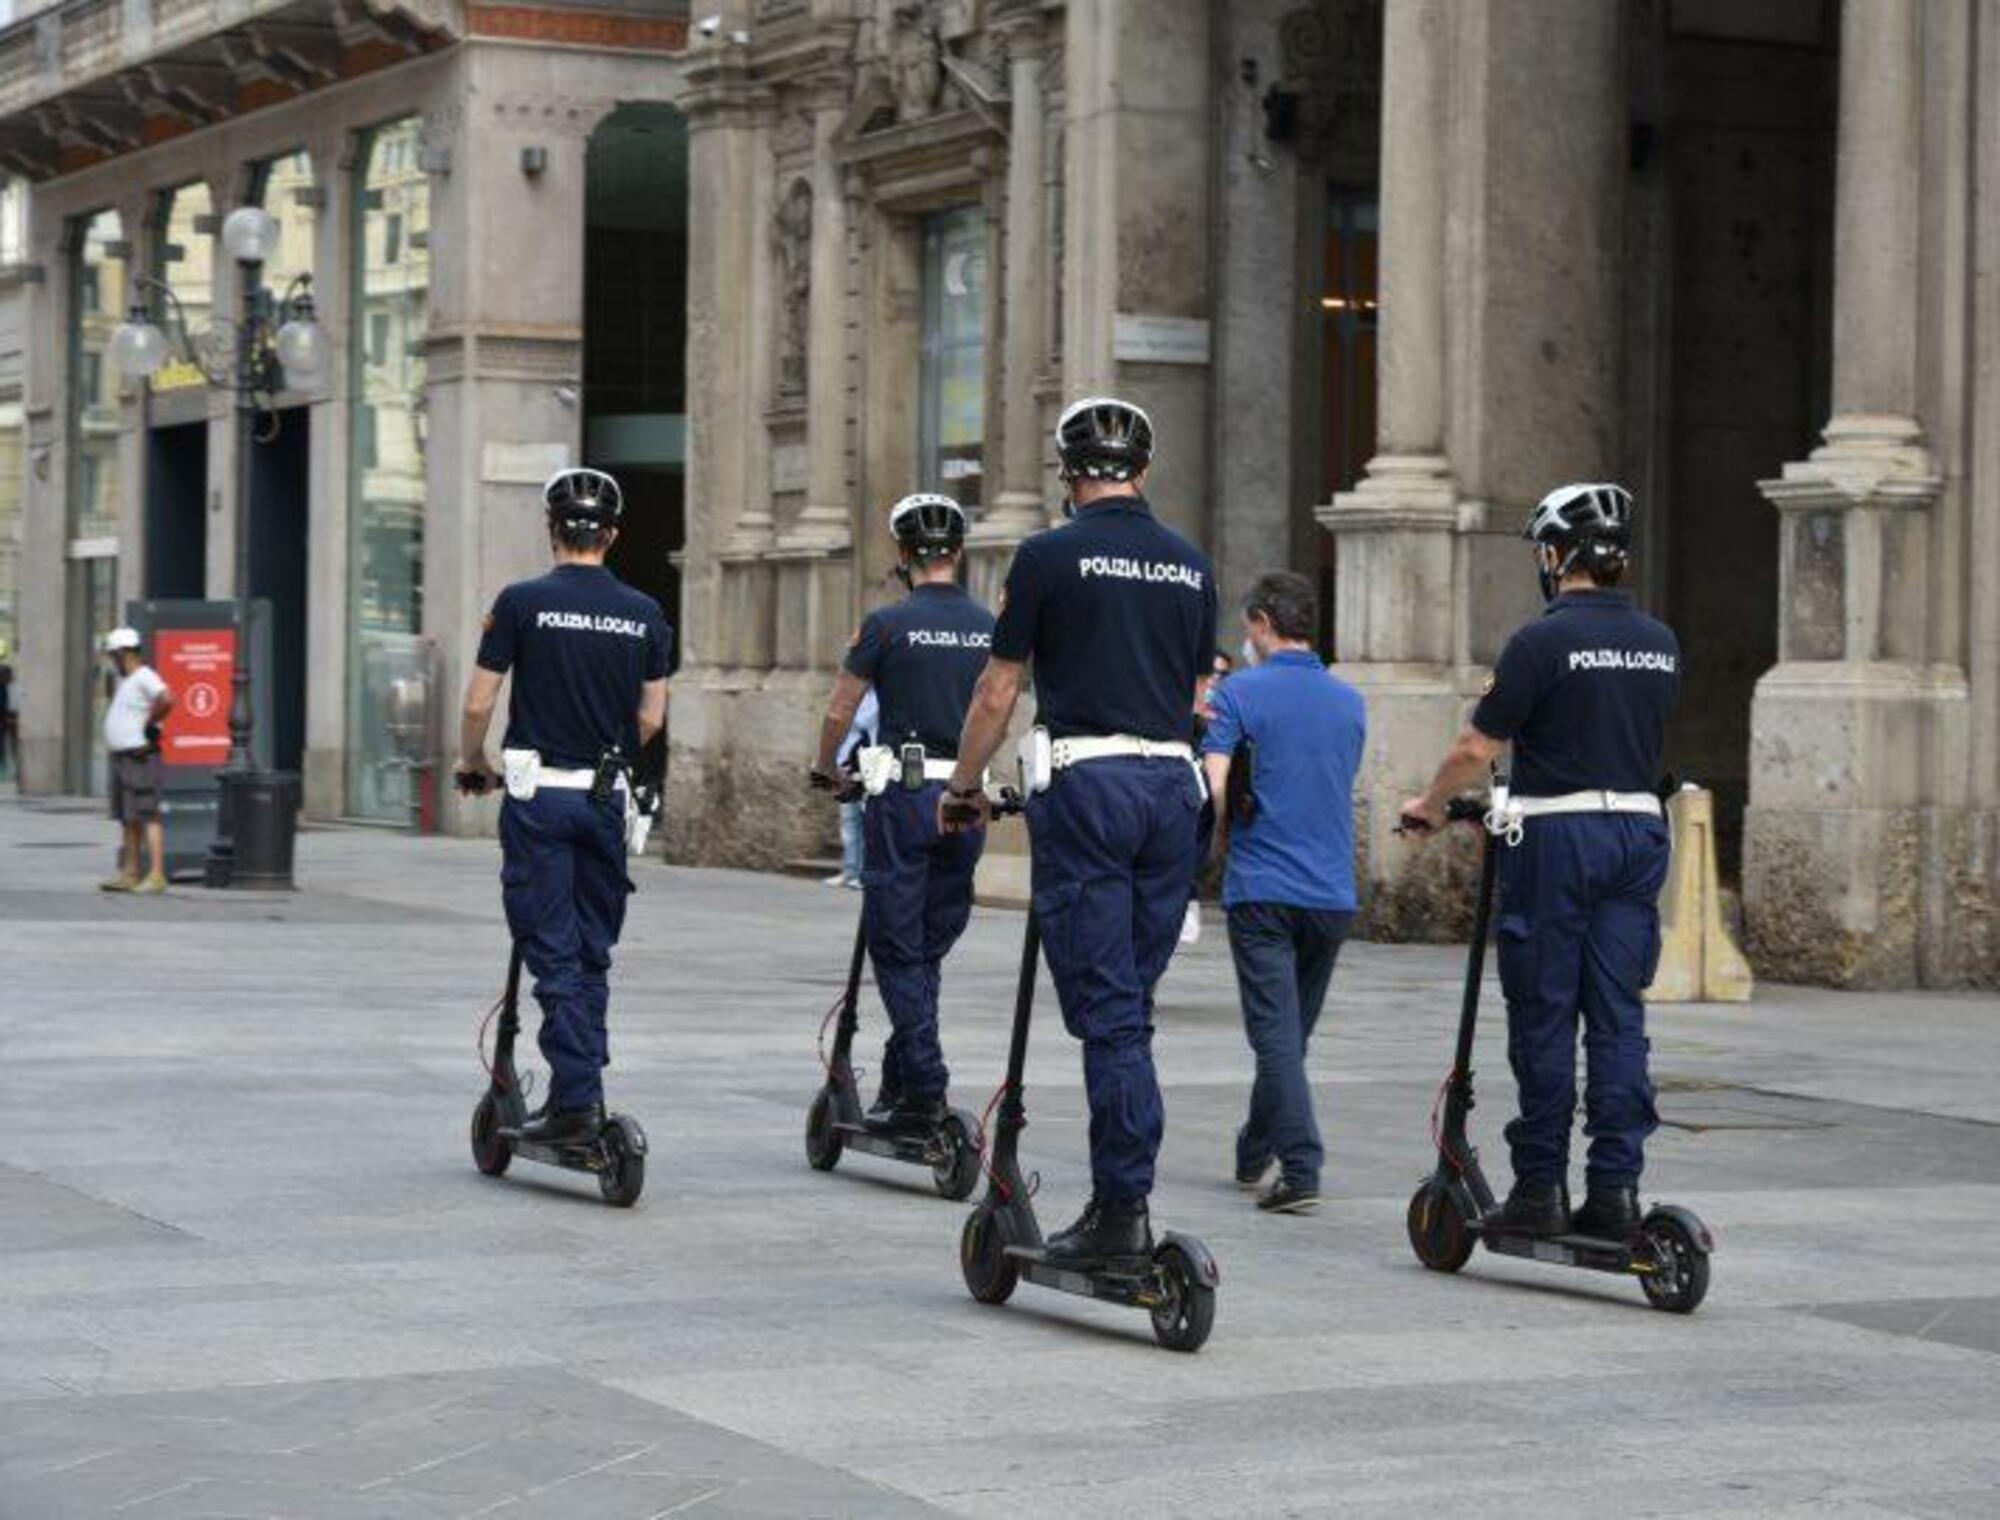 La polizia locale a Milano in giro con i monopattini